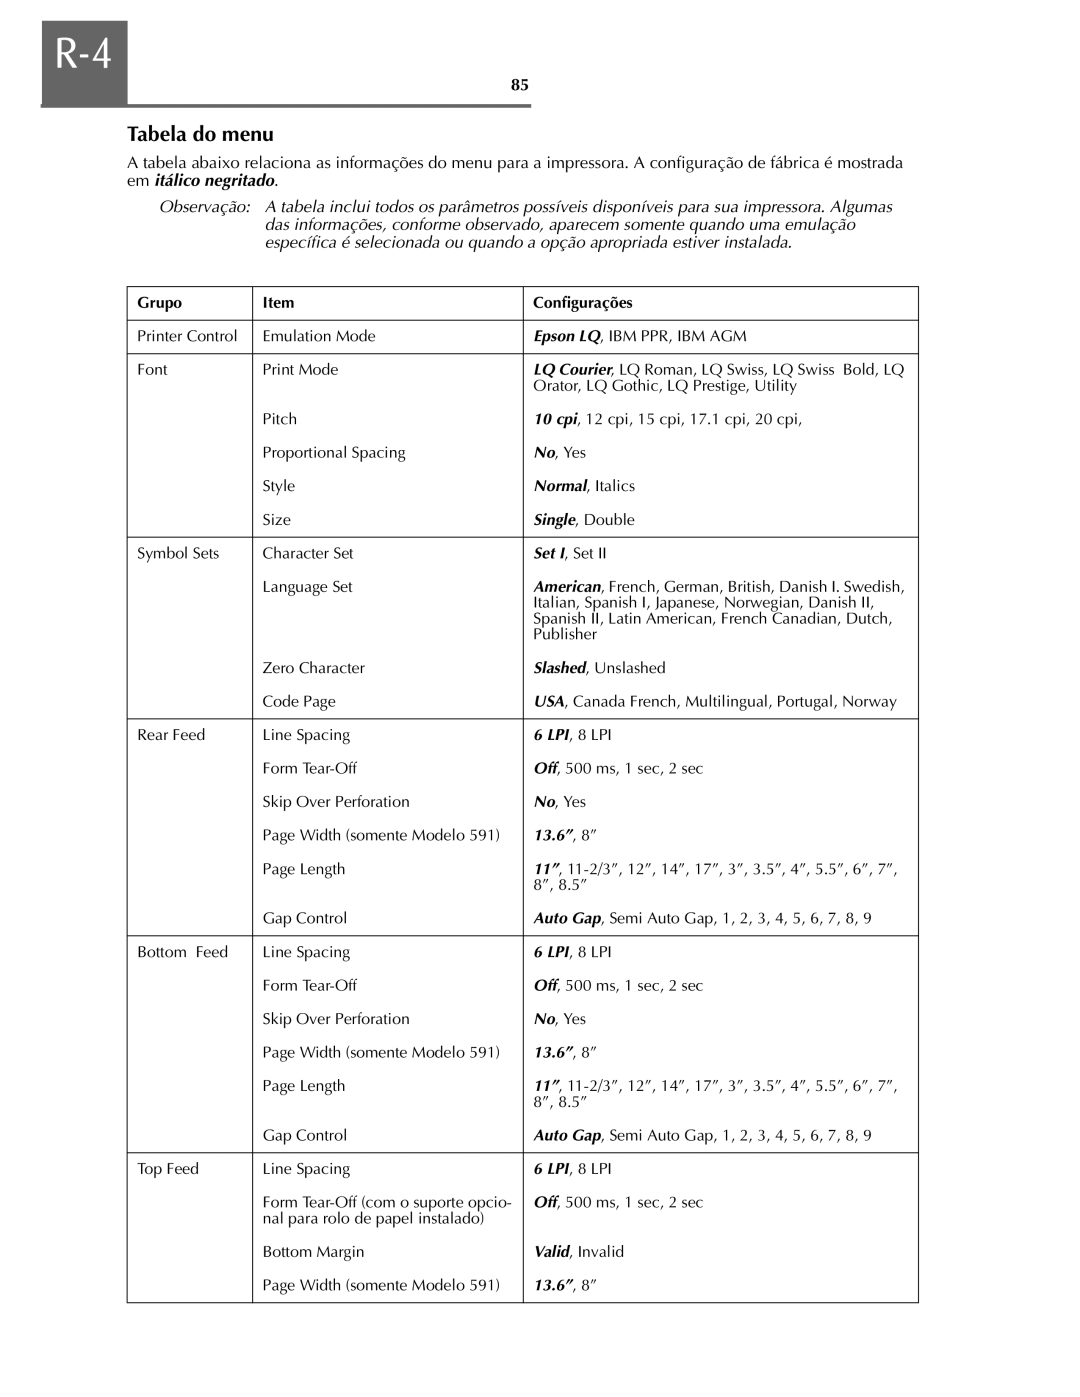 Oki ML590 manual Tabela do menu, Grupo, Configurações, 13.6” , 8” 